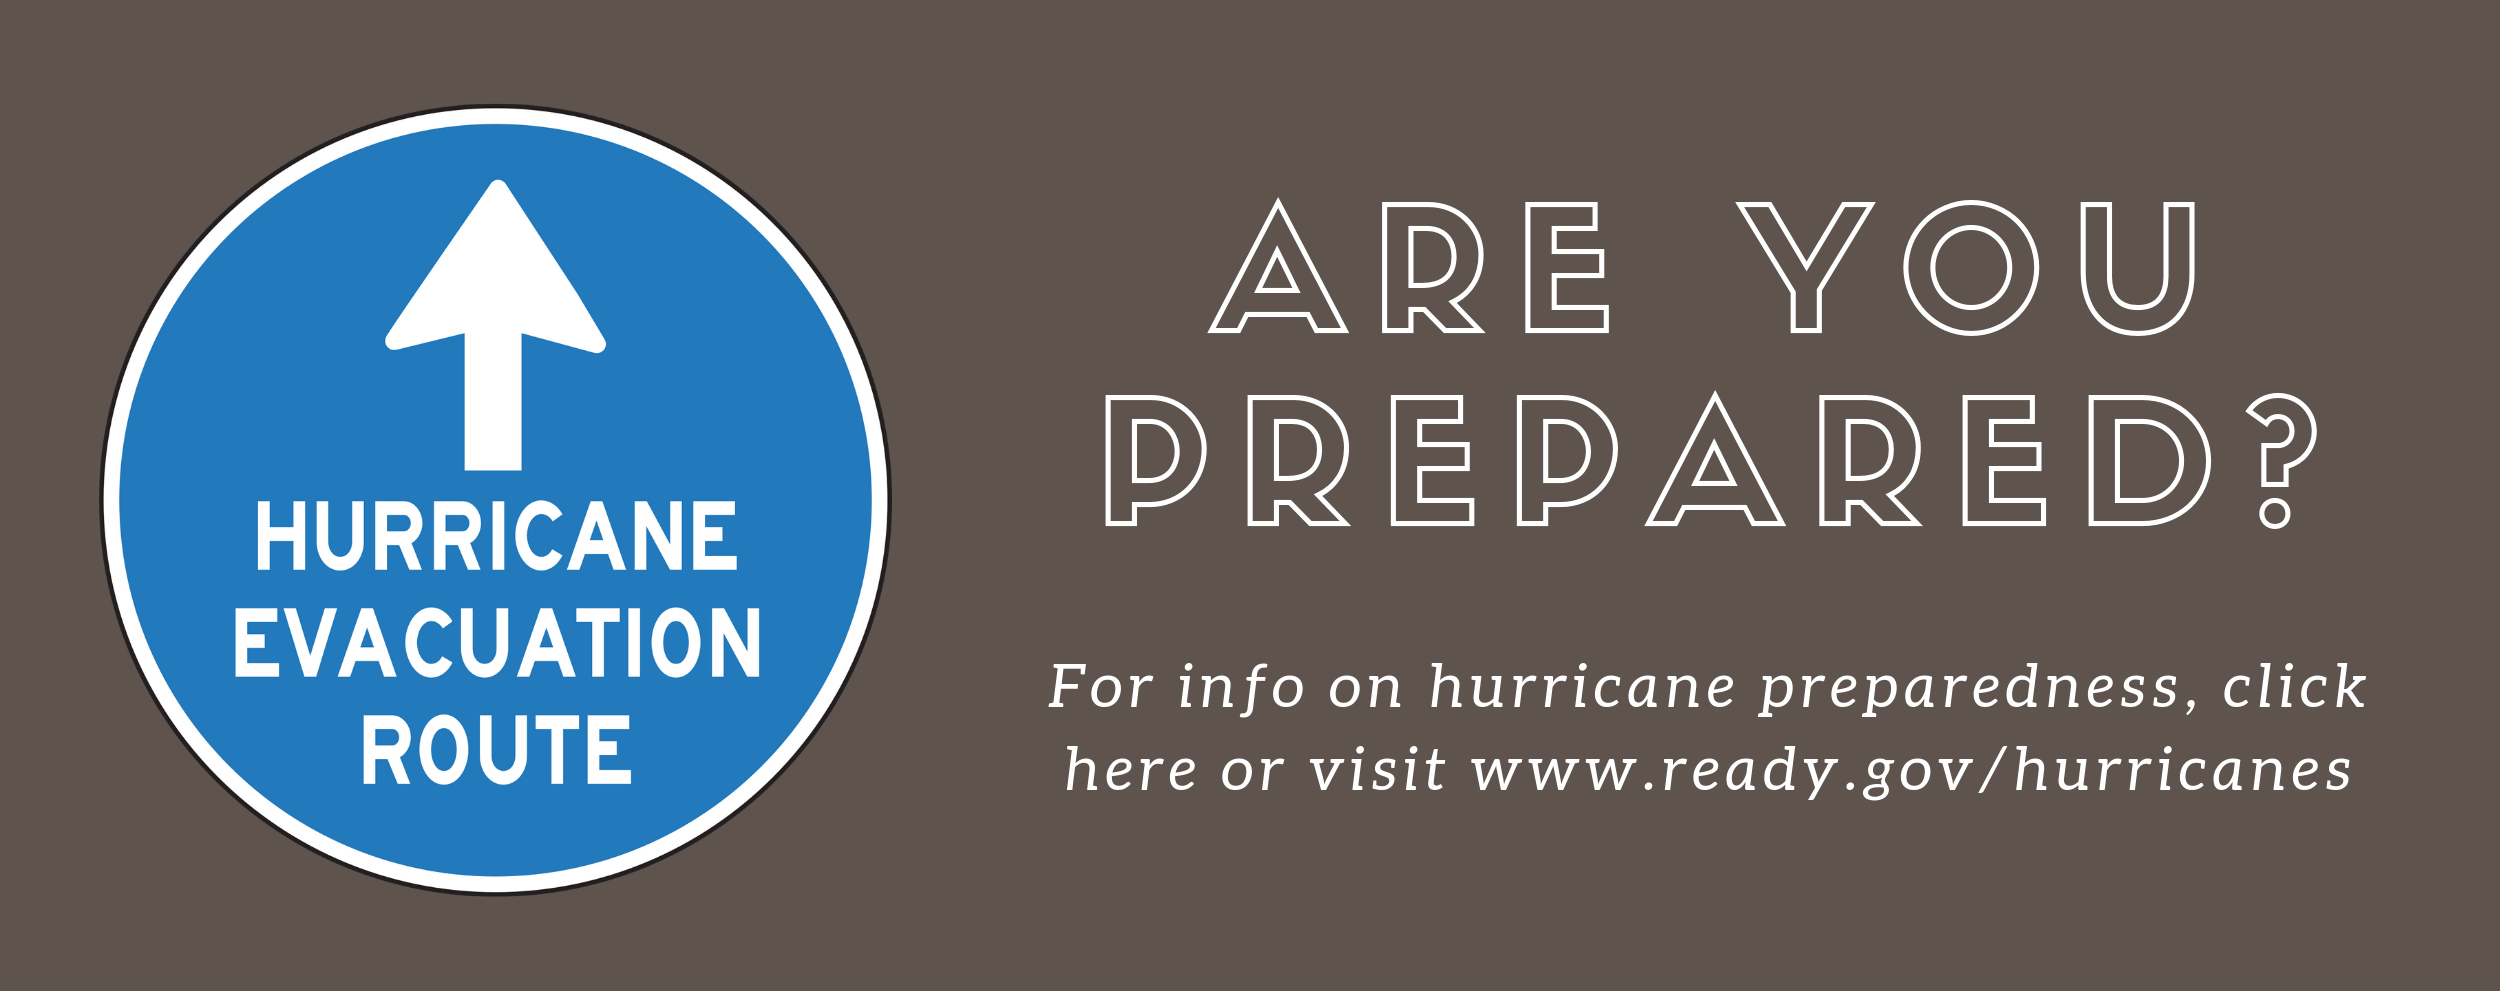 Are You Prepared? Hurricane Preparedness Info at www.ready.gov/hurricanes